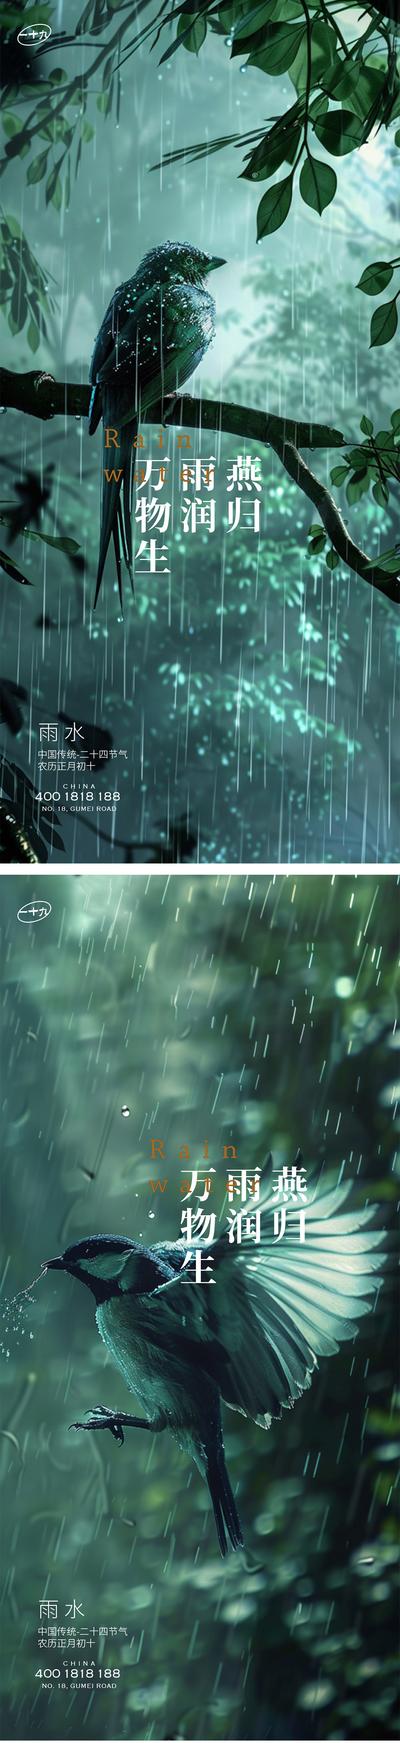 南门网 广告 海报 公历节日 雨水 二十四节气 谷雨 森林 燕子 春天 春雨 新中式 意境 高级